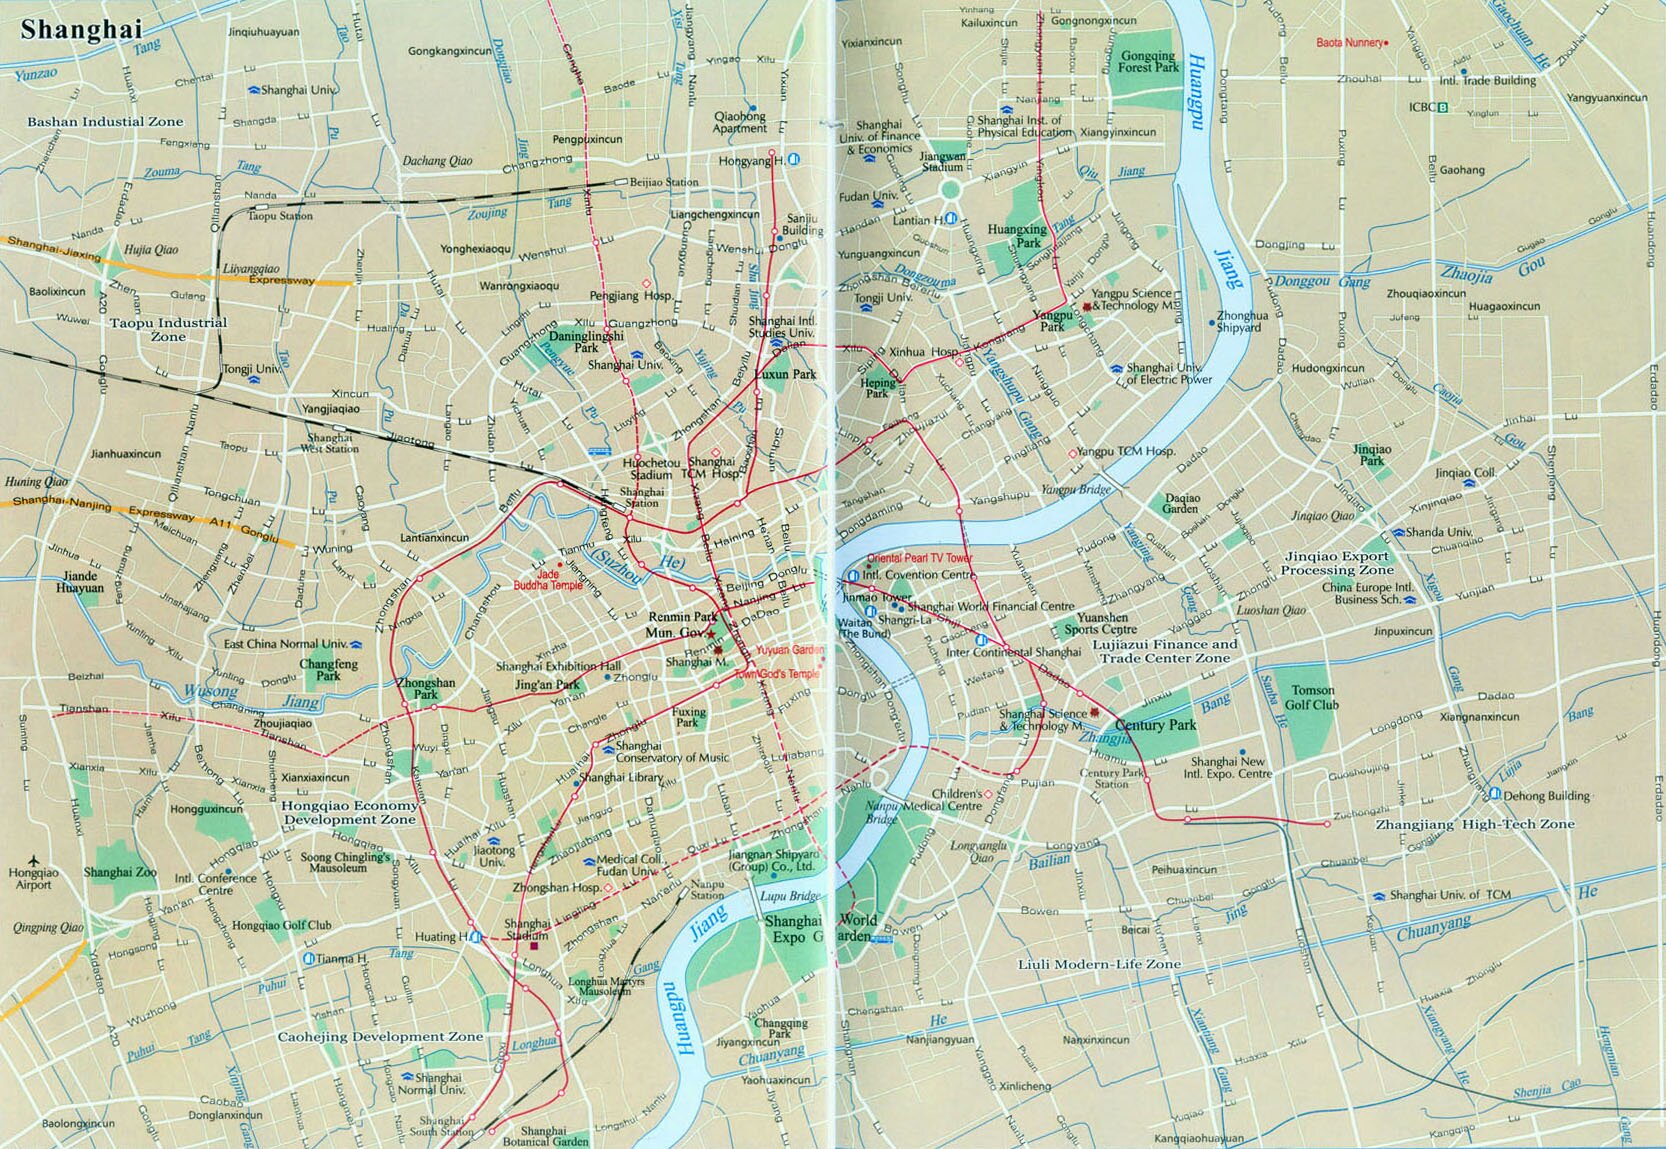 Shanghai Map, Shanghai Metro Map, Shanghai City Map, Shanghai China Map,  Shanghai Travel Map